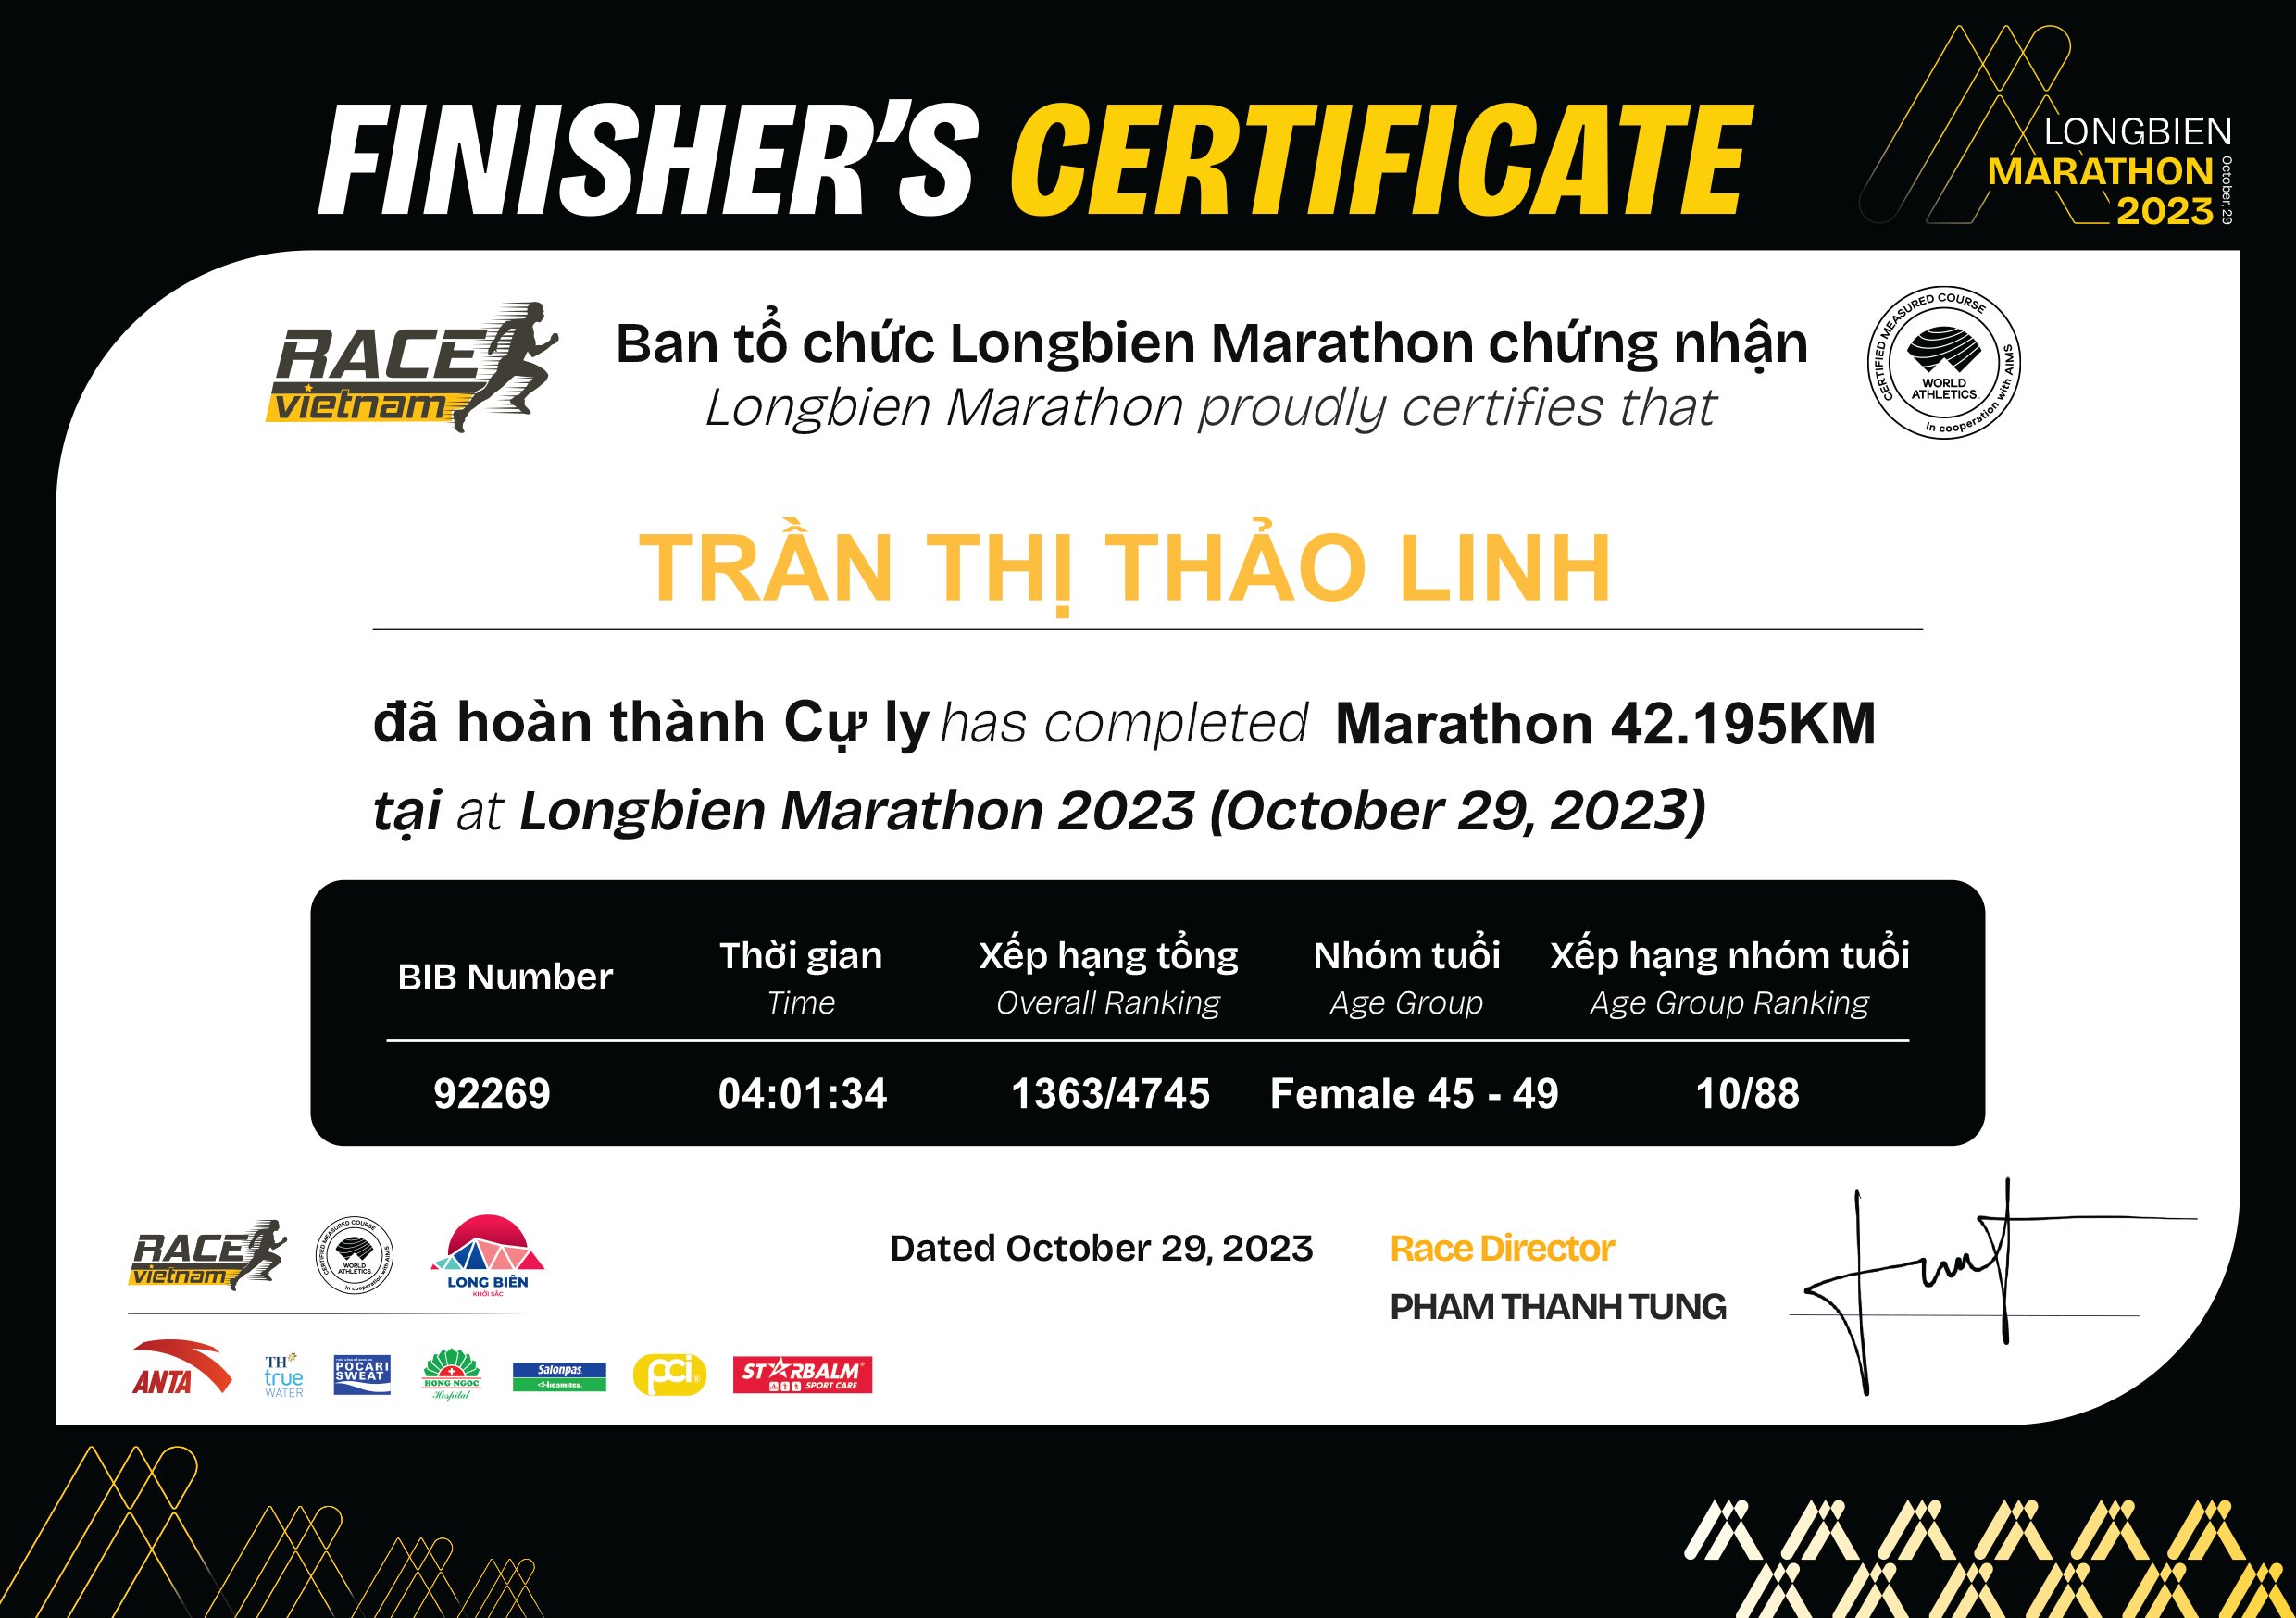 92269 - Trần Thị Thảo Linh